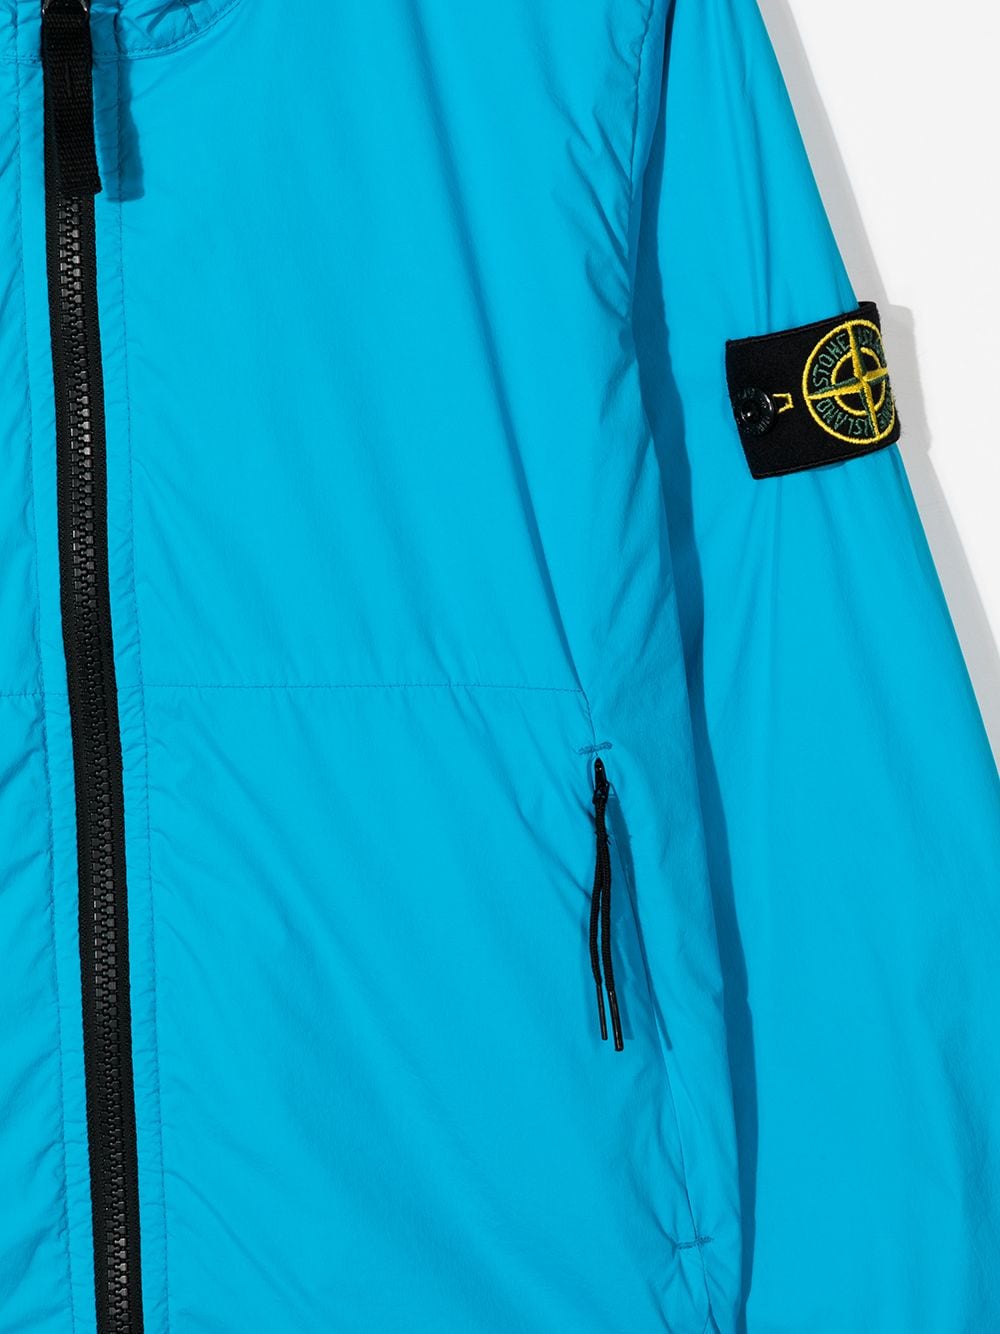 STONE ISLAND KIDS Zip-front hooded rain jacket Blue - MAISONDEFASHION.COM